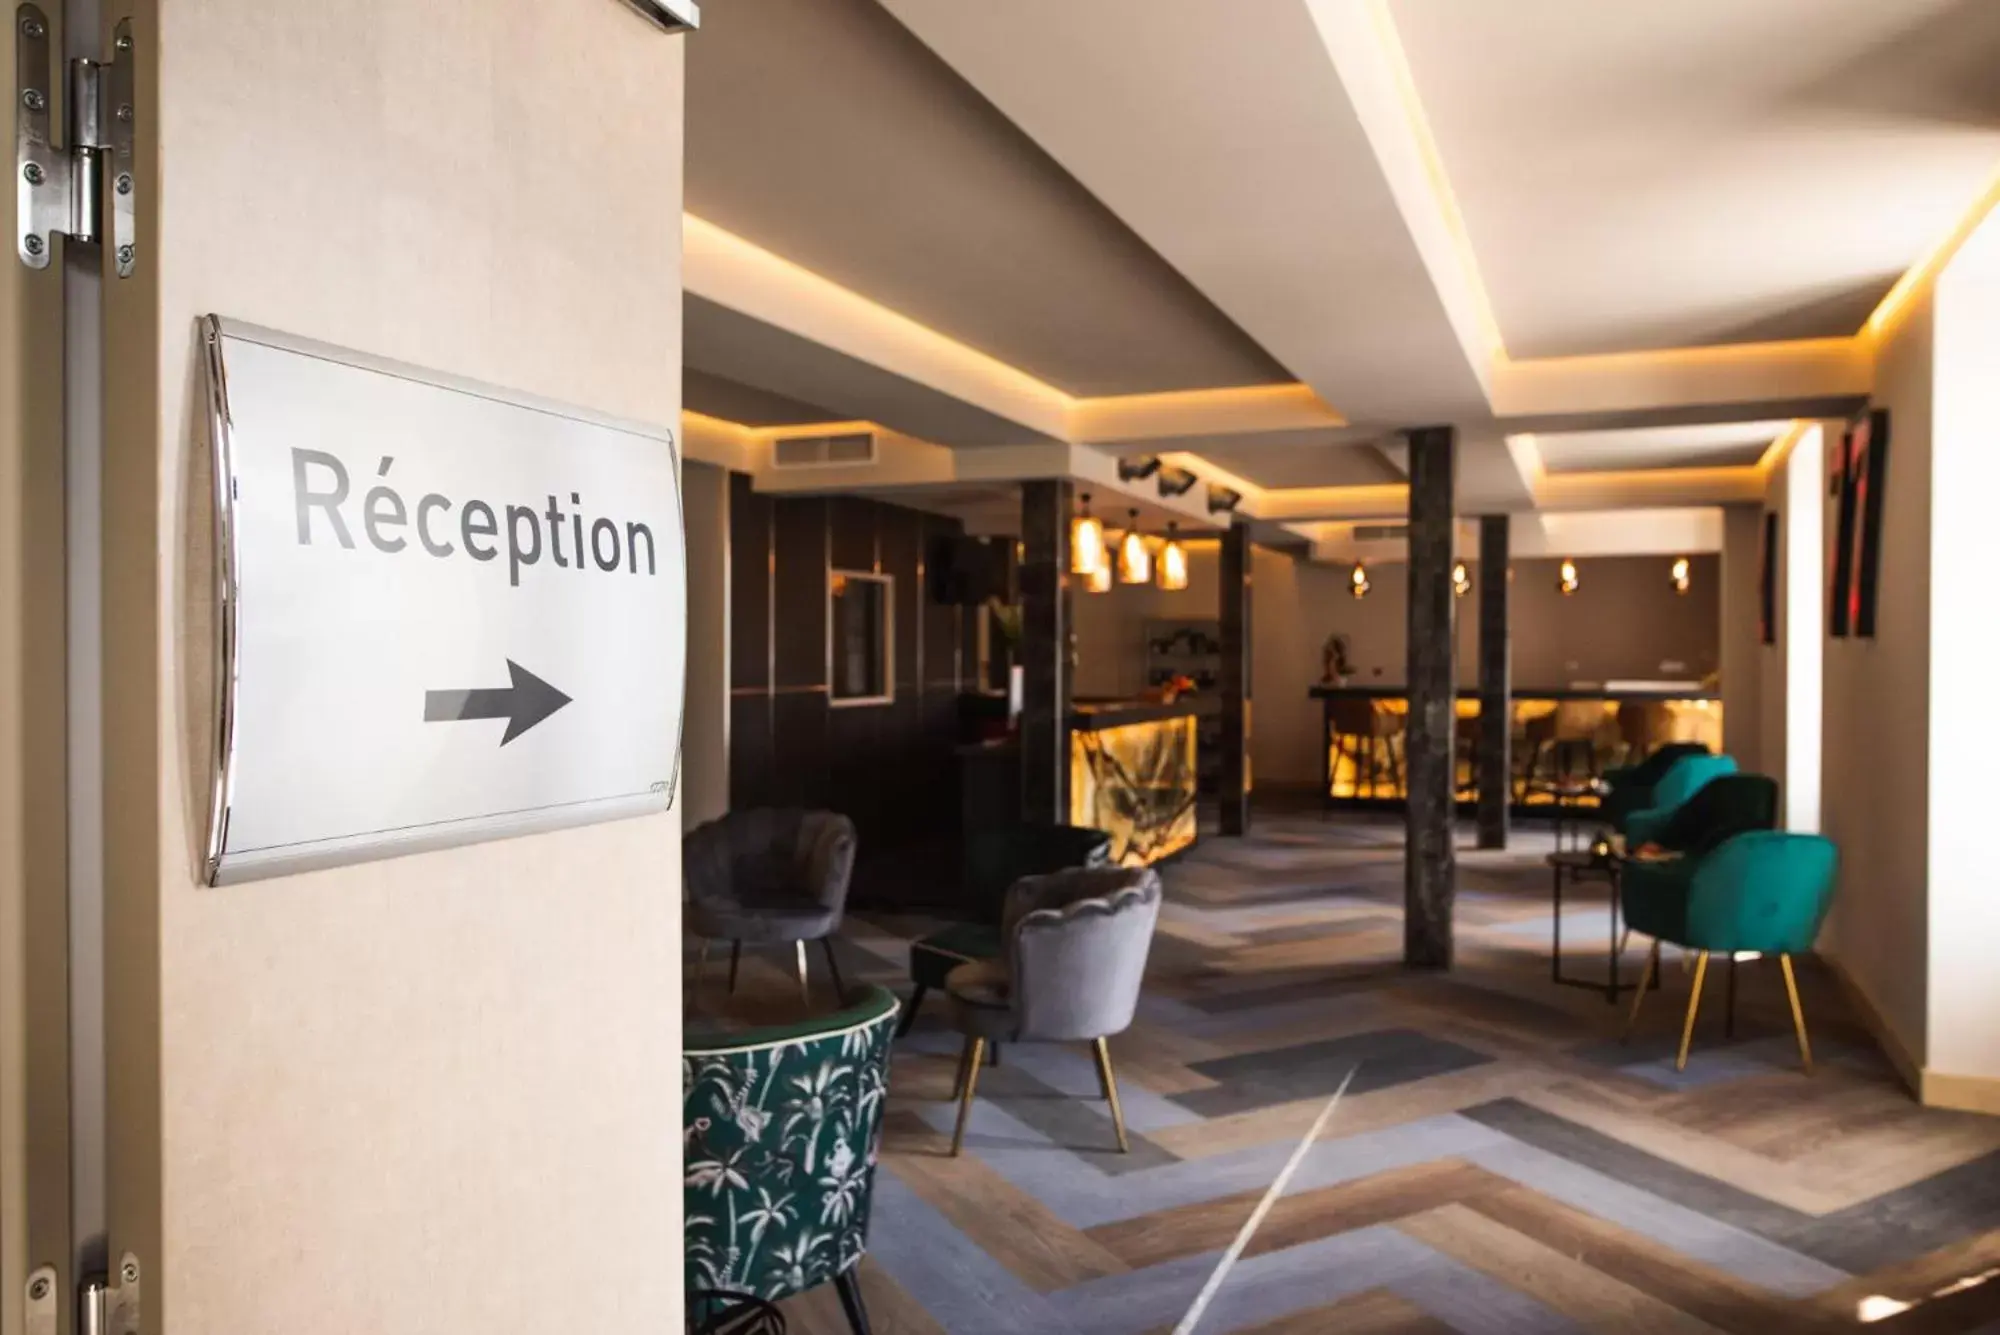 Lobby or reception in Hôtel 1770 & Spa